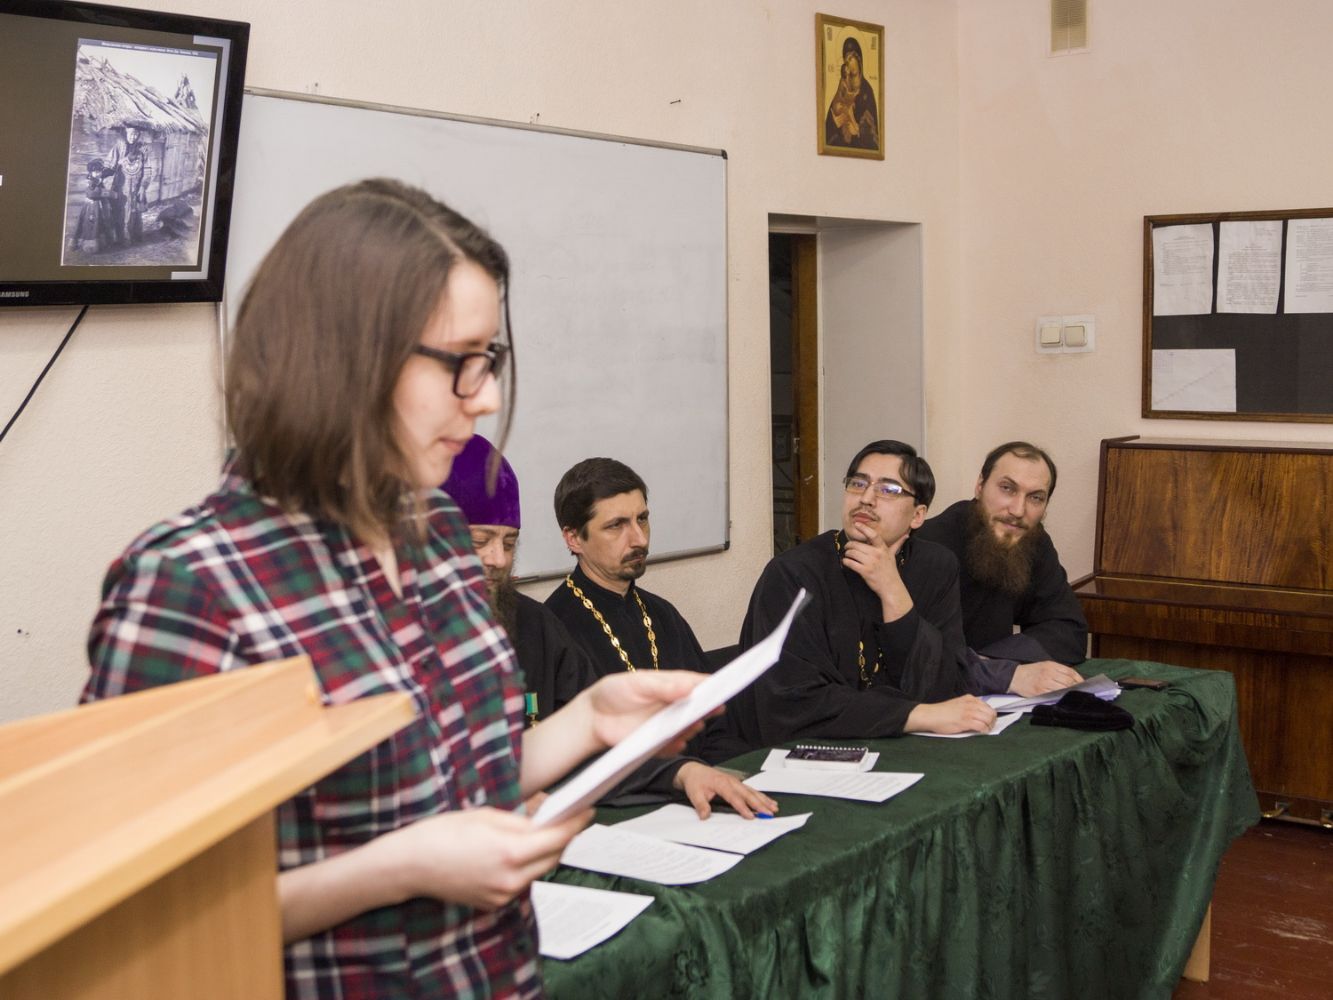 В Барнаульской духовной семинарии обсудили вопросы миссионерского служения в современных условиях